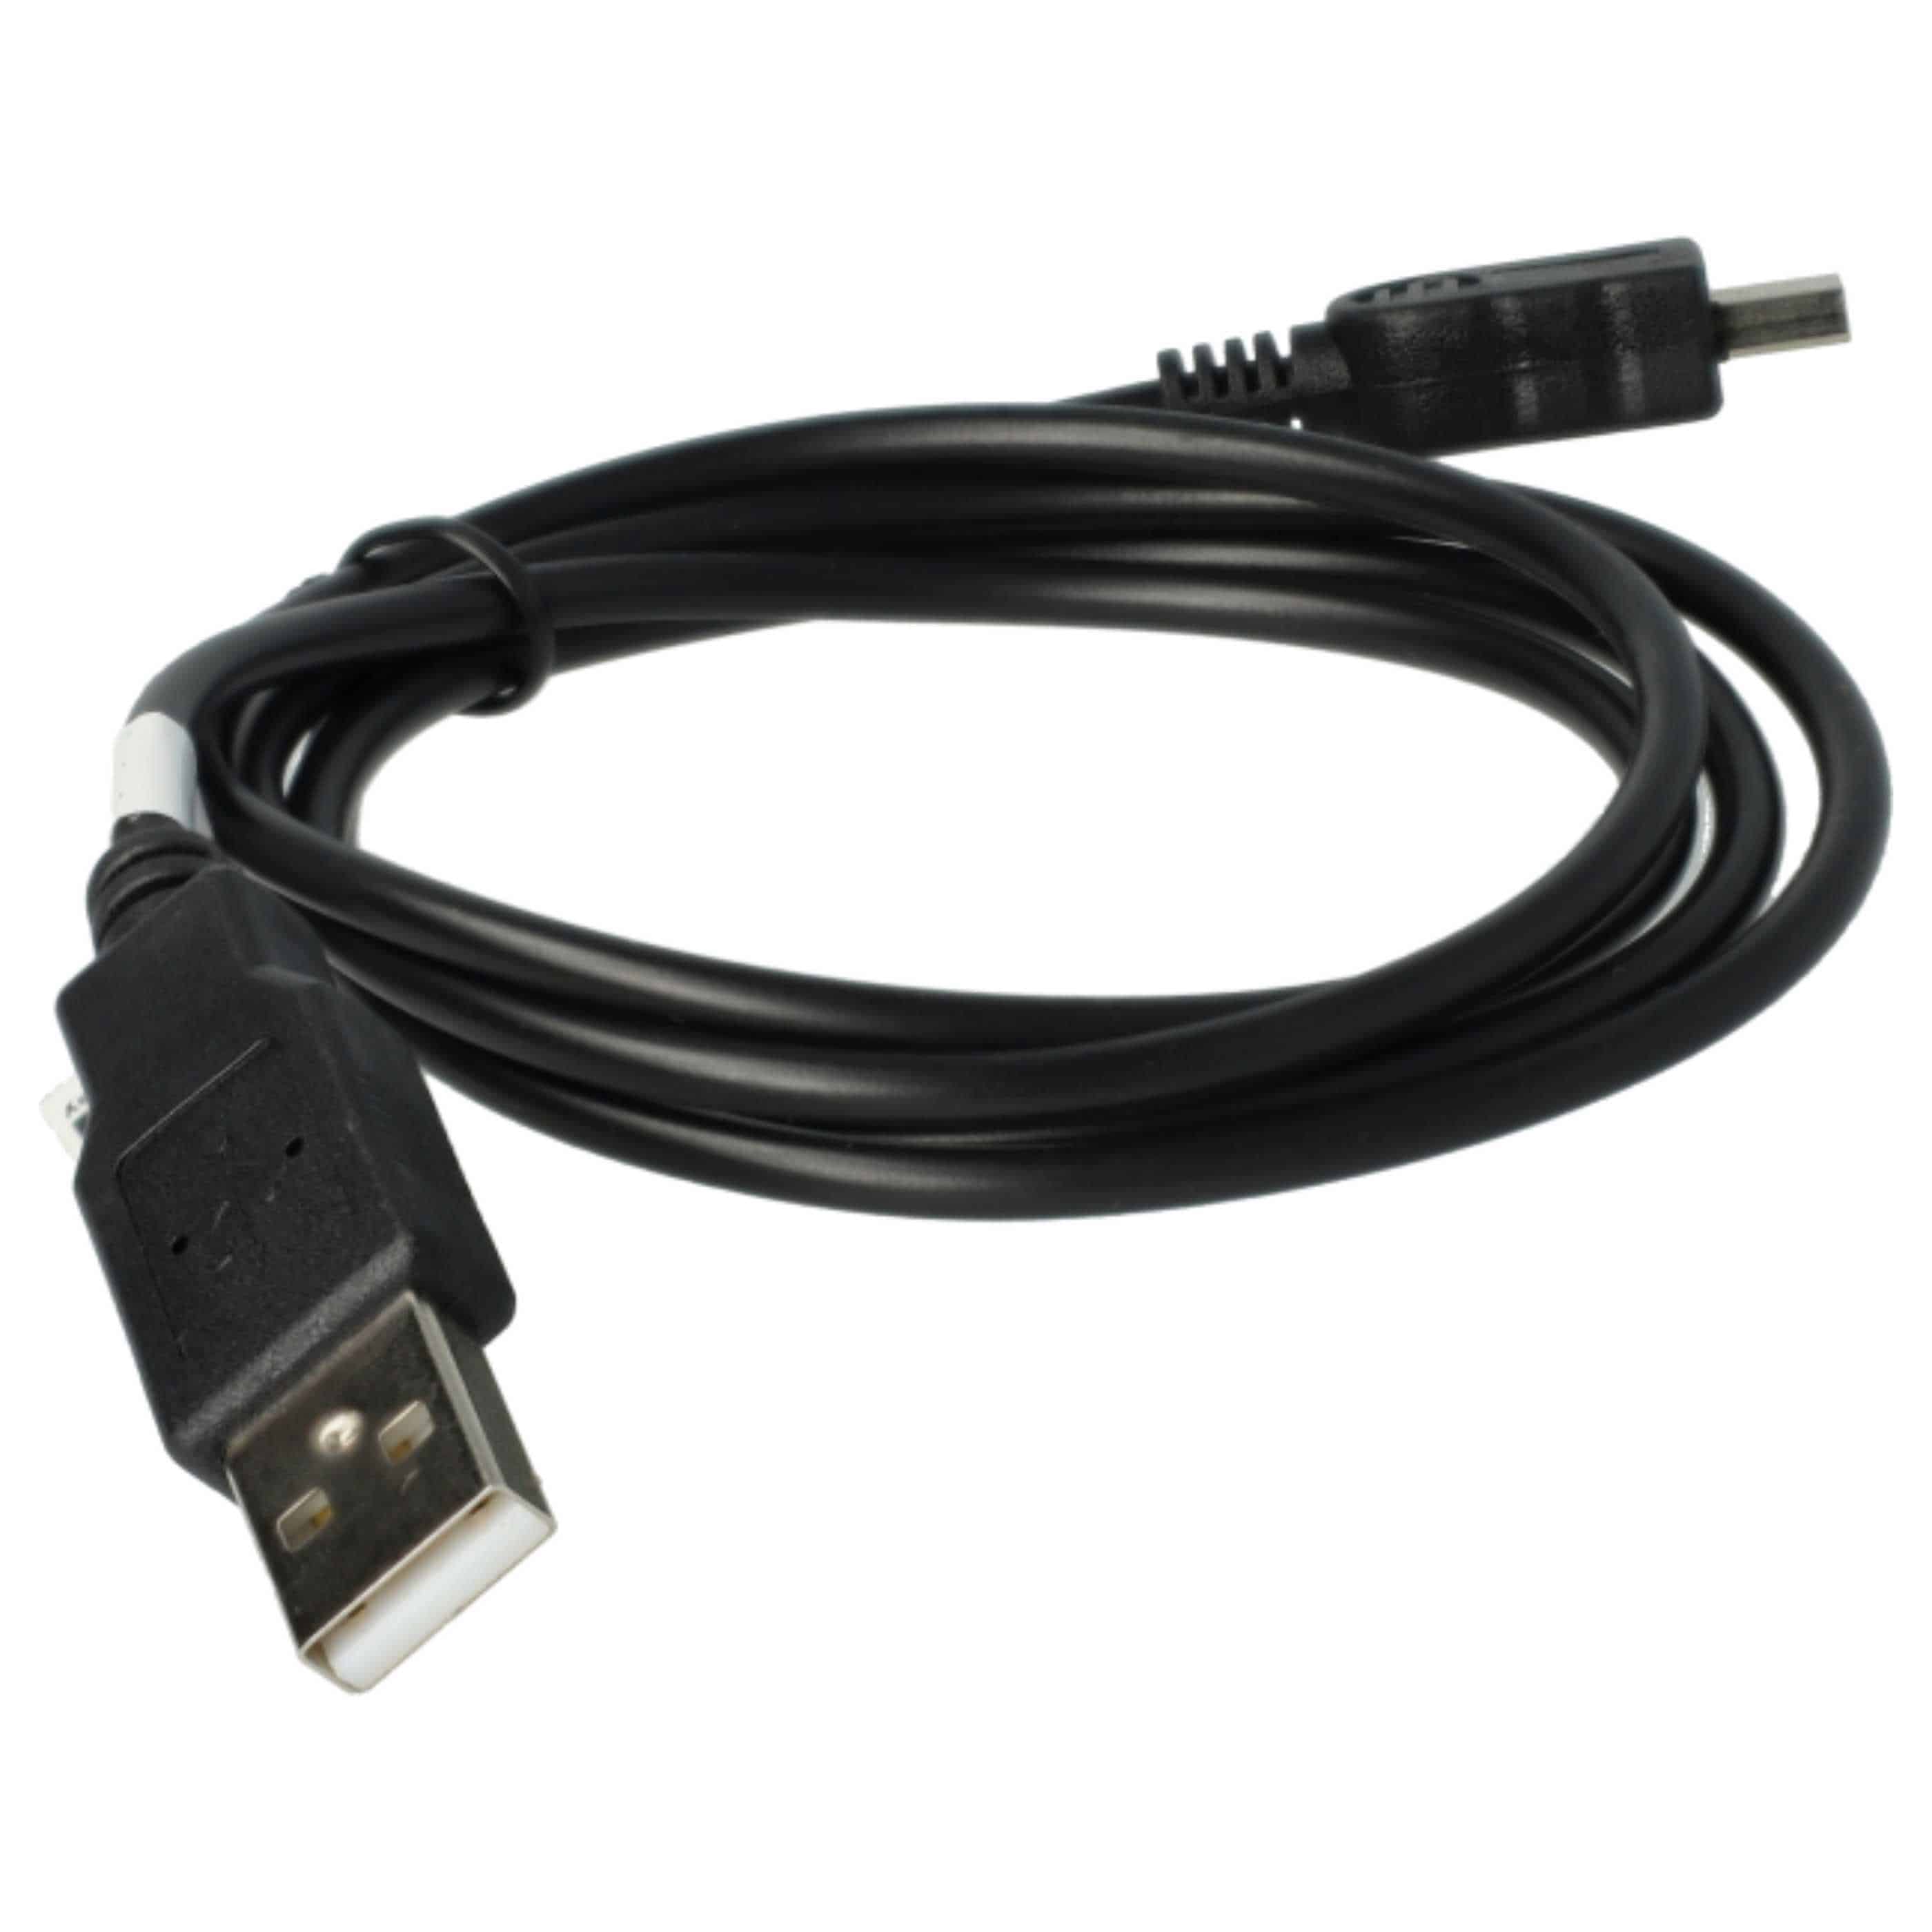 USB Datenkabel Ladekabel 2in1 passend für Nokia E51 Handy - 100cm